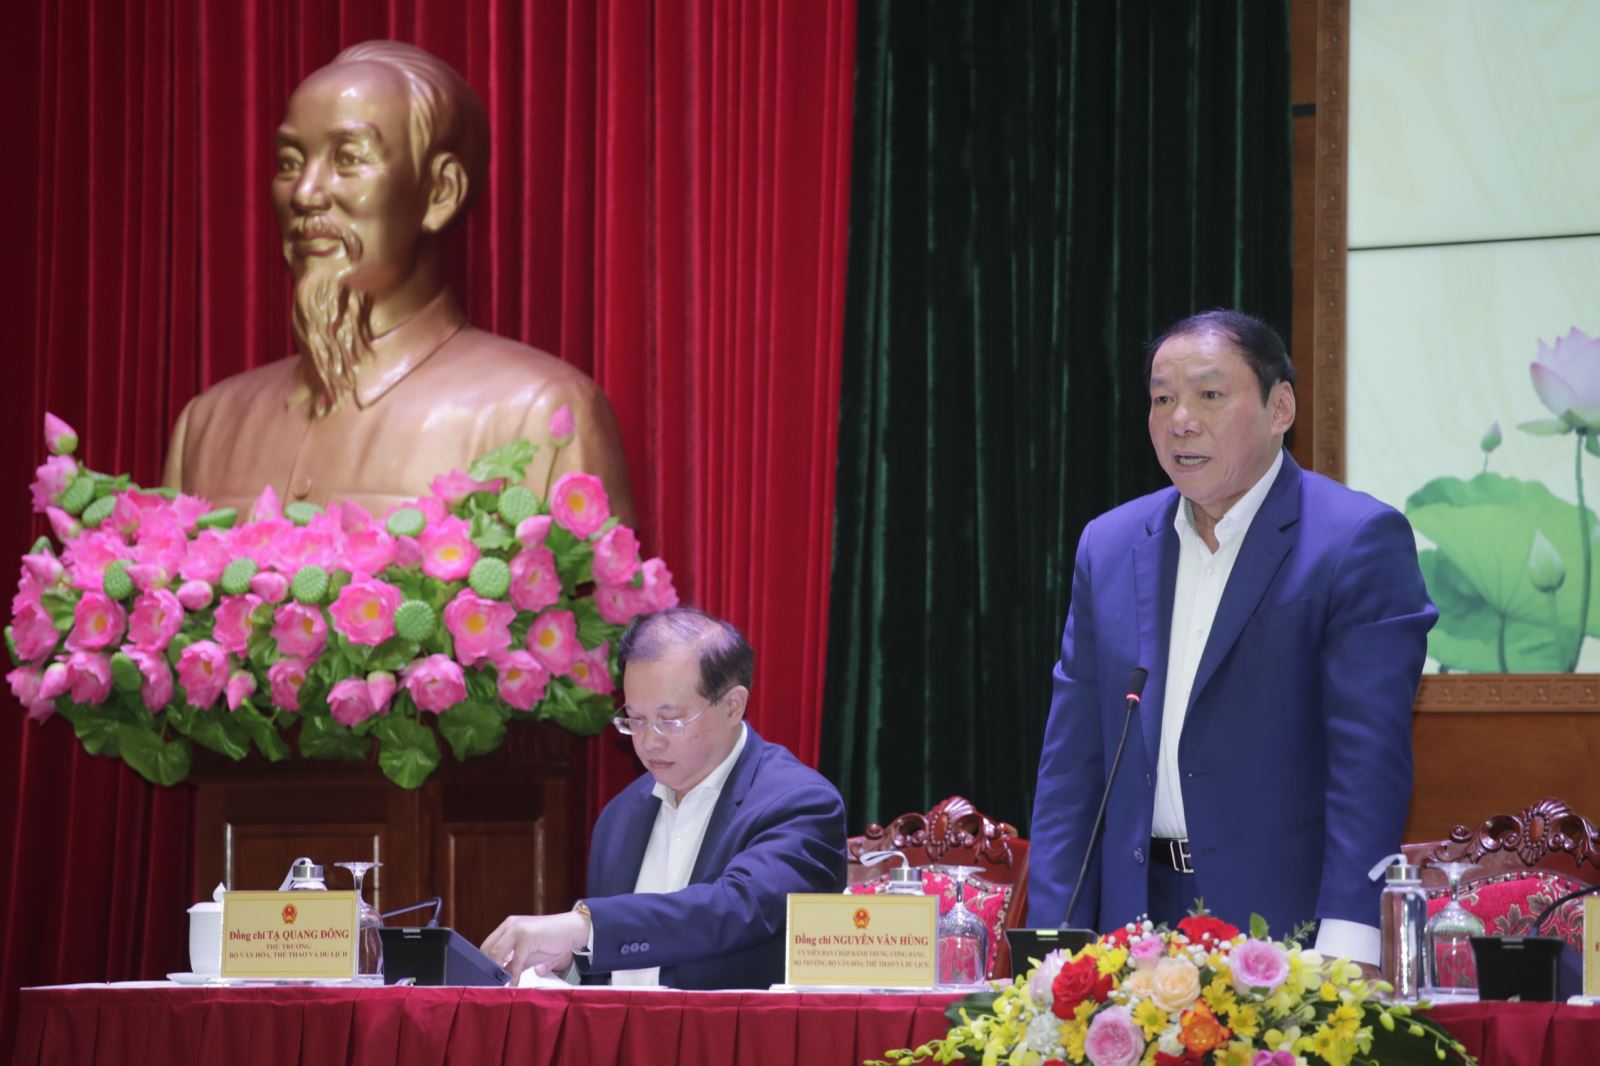 Bộ trưởng Nguyễn Văn Hùng: Đổi mới về tư duy, thể hiện ước mơ, khát vọng đưa ngành VHTTDL phát triển